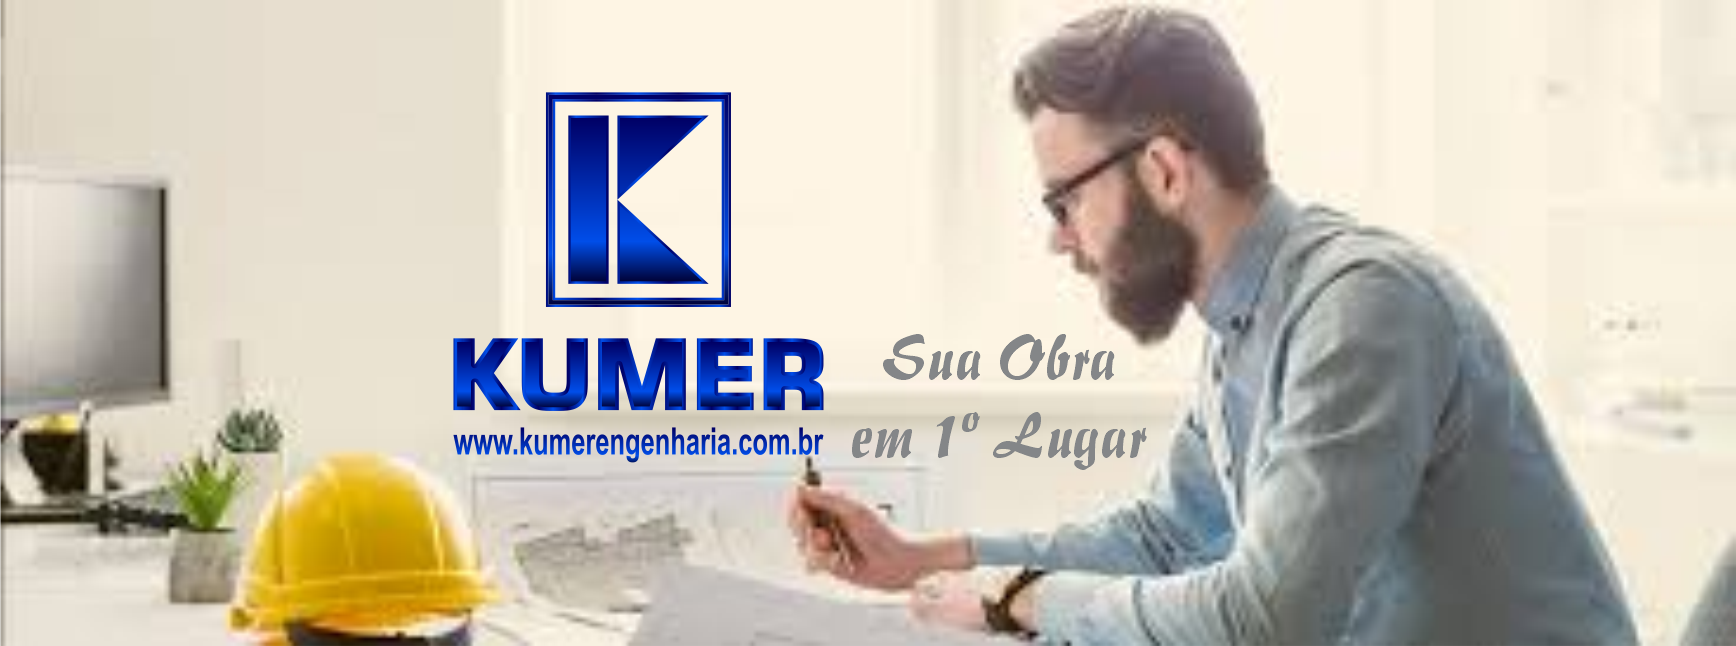  Kumer Engenharia      AVENIDA COMENDADOR FRANCO, 553, CURITIBA - PR  Fones: (41) 99246-3711 /